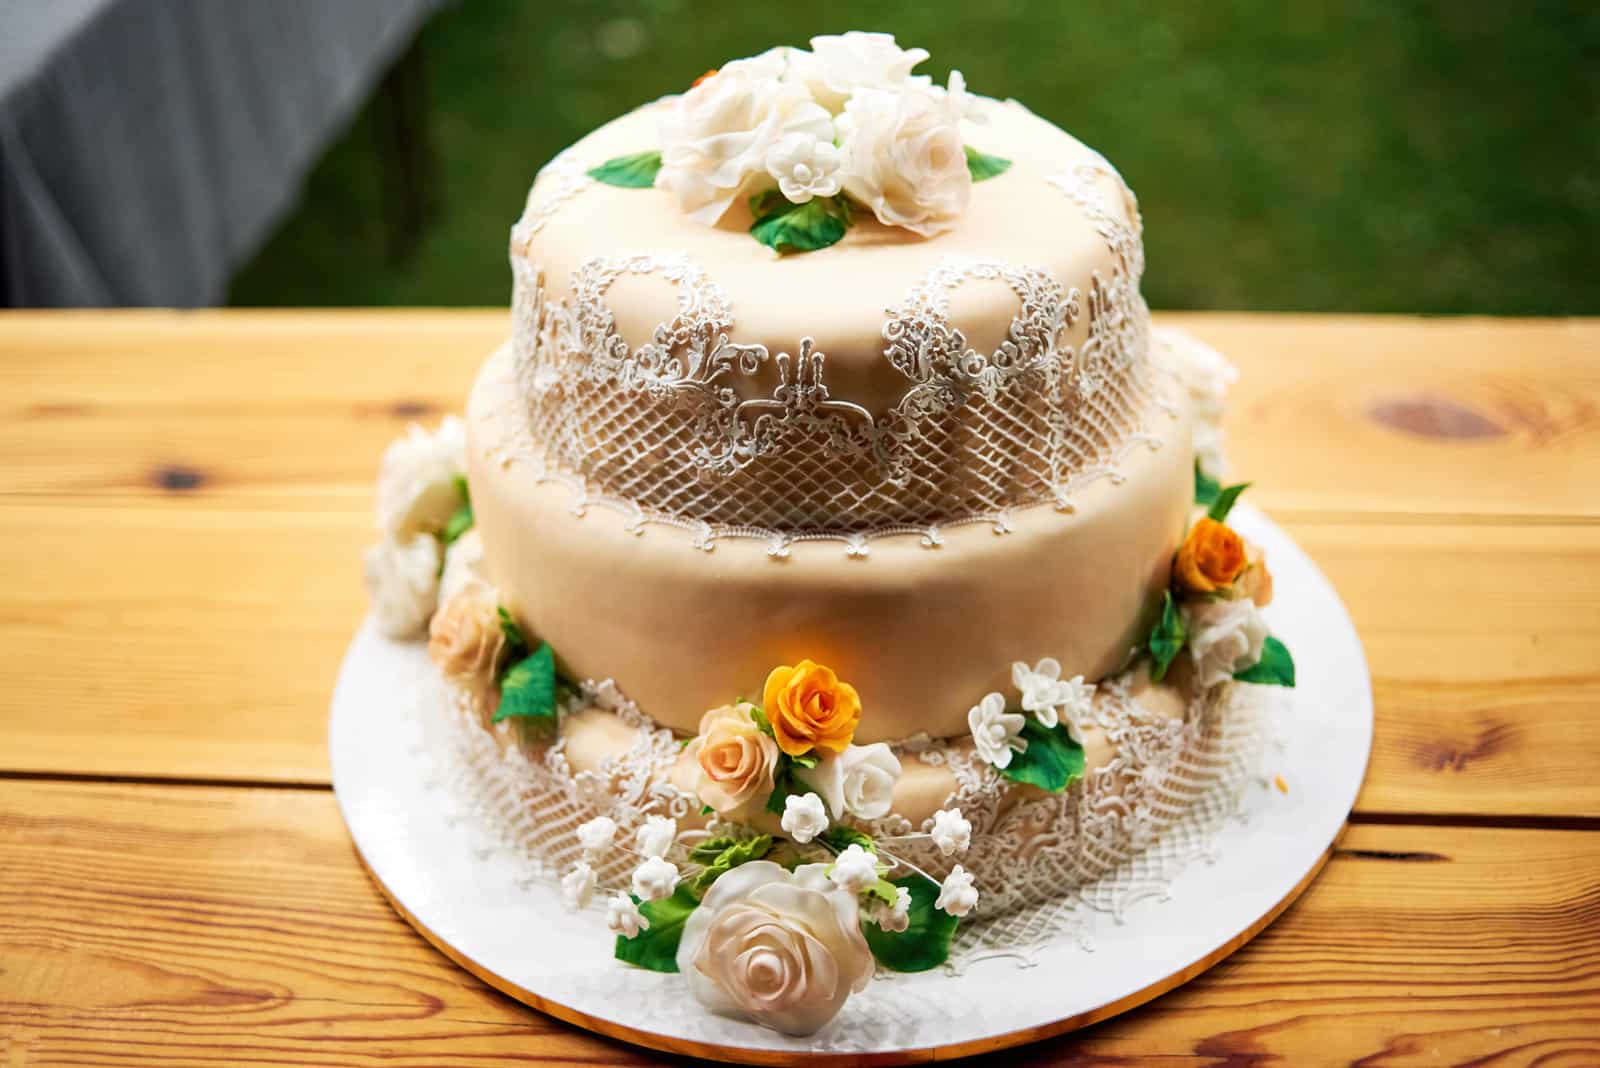 Kuchen mit grünen, weißen und gelben Details